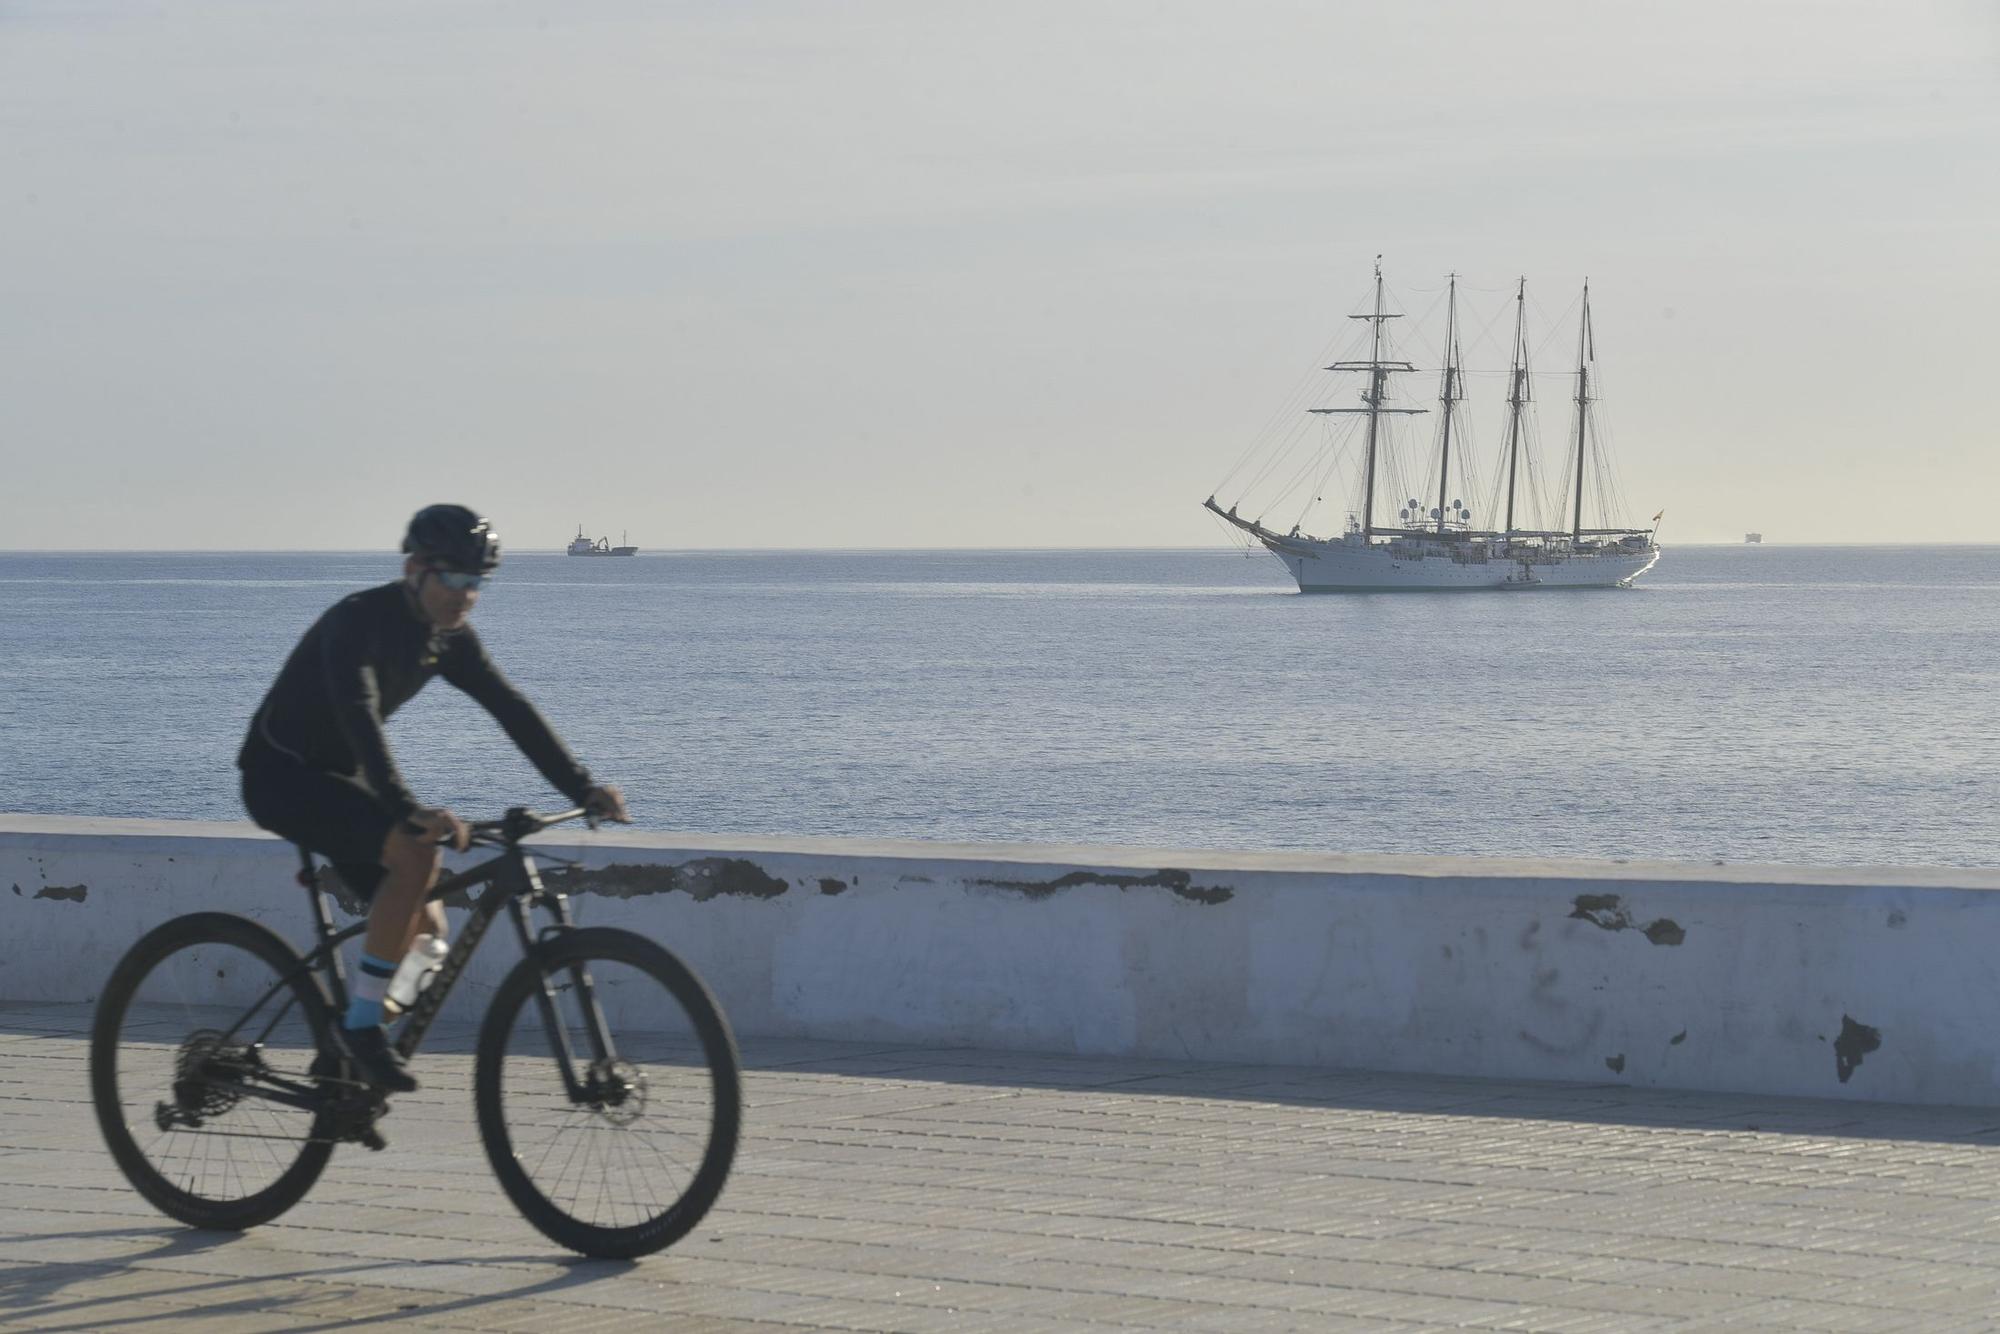 El buque 'Juan Sebastián Elcano' llega a Las Palmas de Gran Canaria